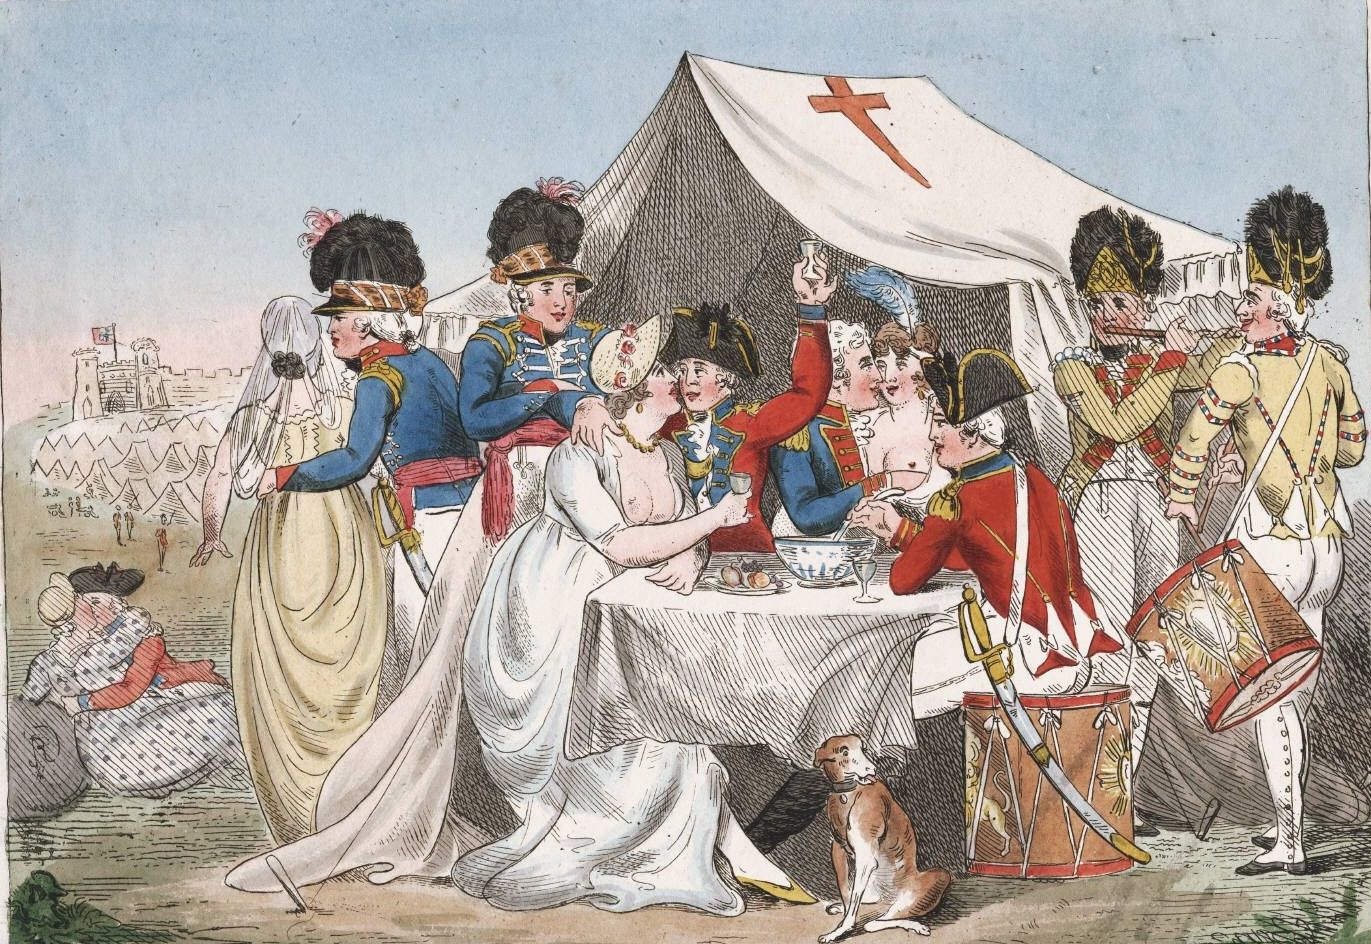 Разукрашенная гравюра "жены и подруги винздоров" или "Любовь в лагере", обличающая моральные пороки британских солдат, 1800 г.